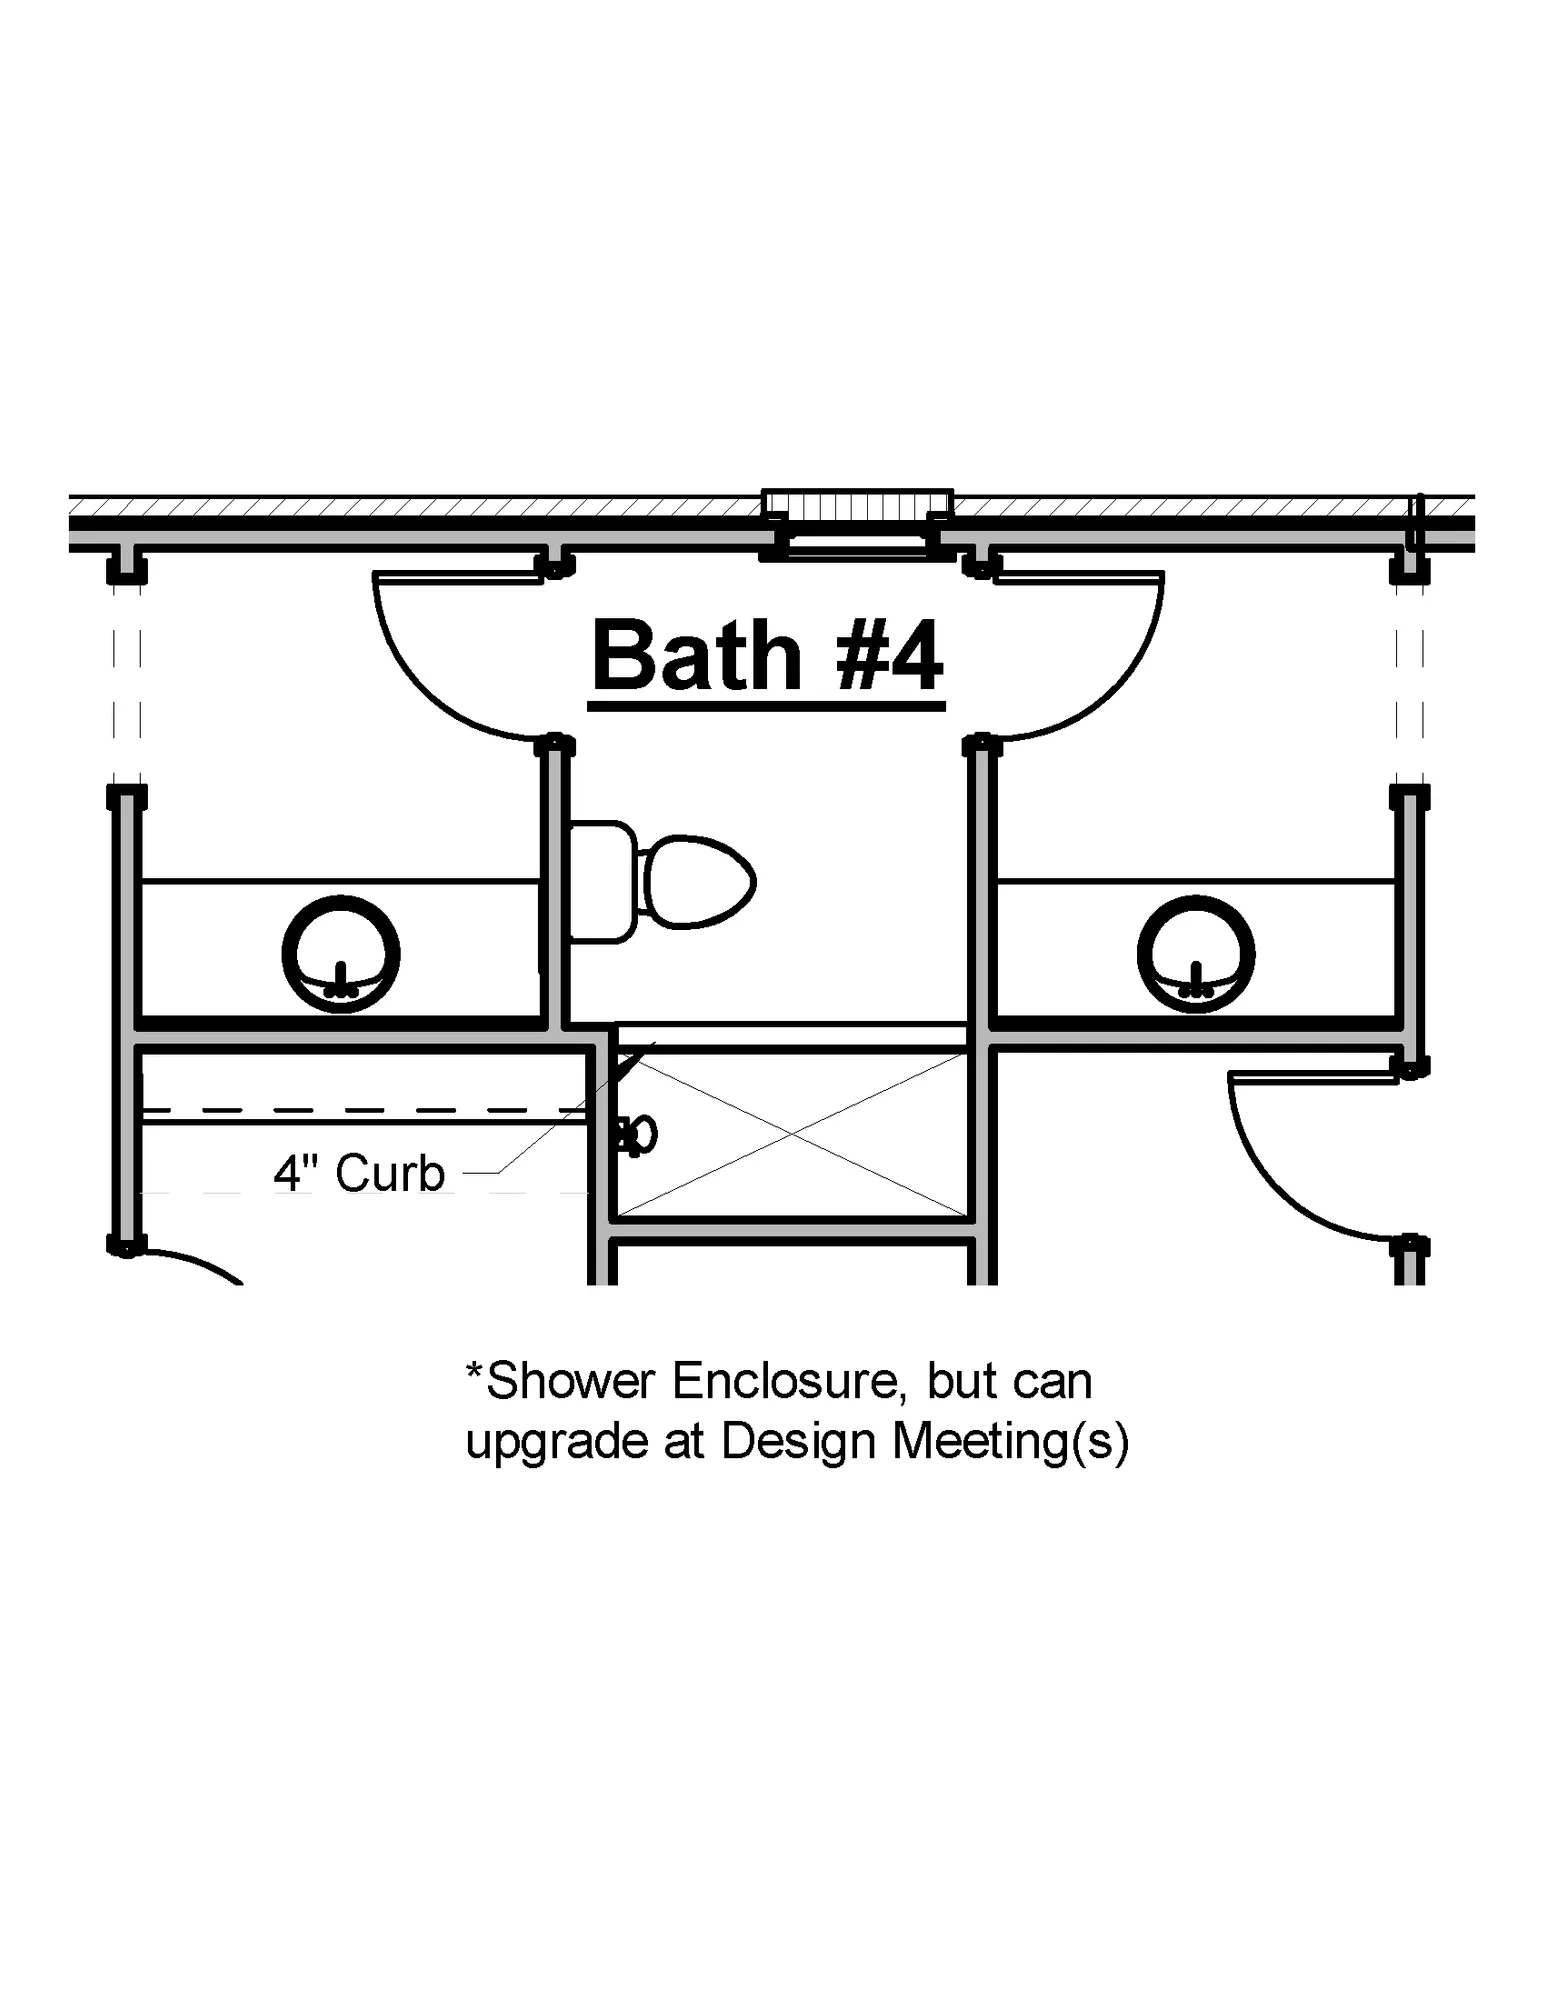 Bath 4 Tile Shower - undefined